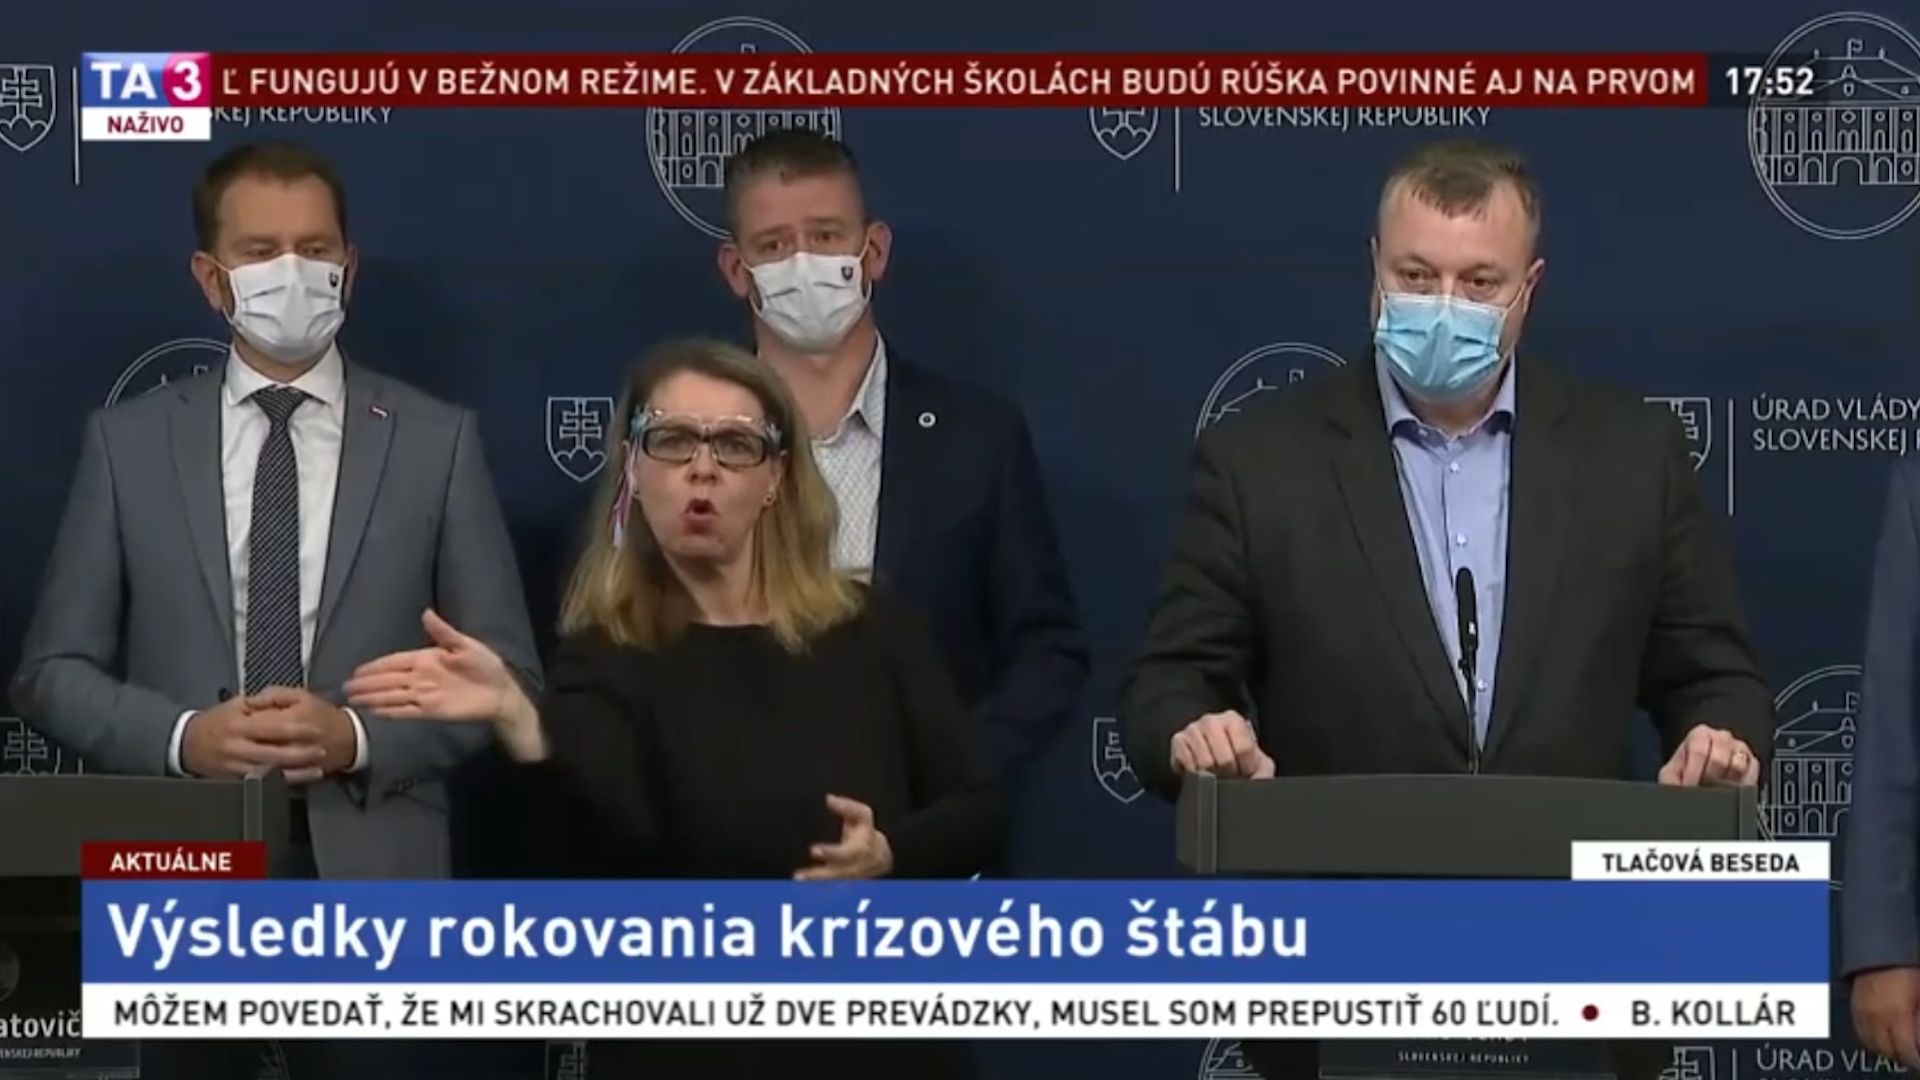 Na Slovensku je naše situace kolem pandemie ostrašujícím příkladem